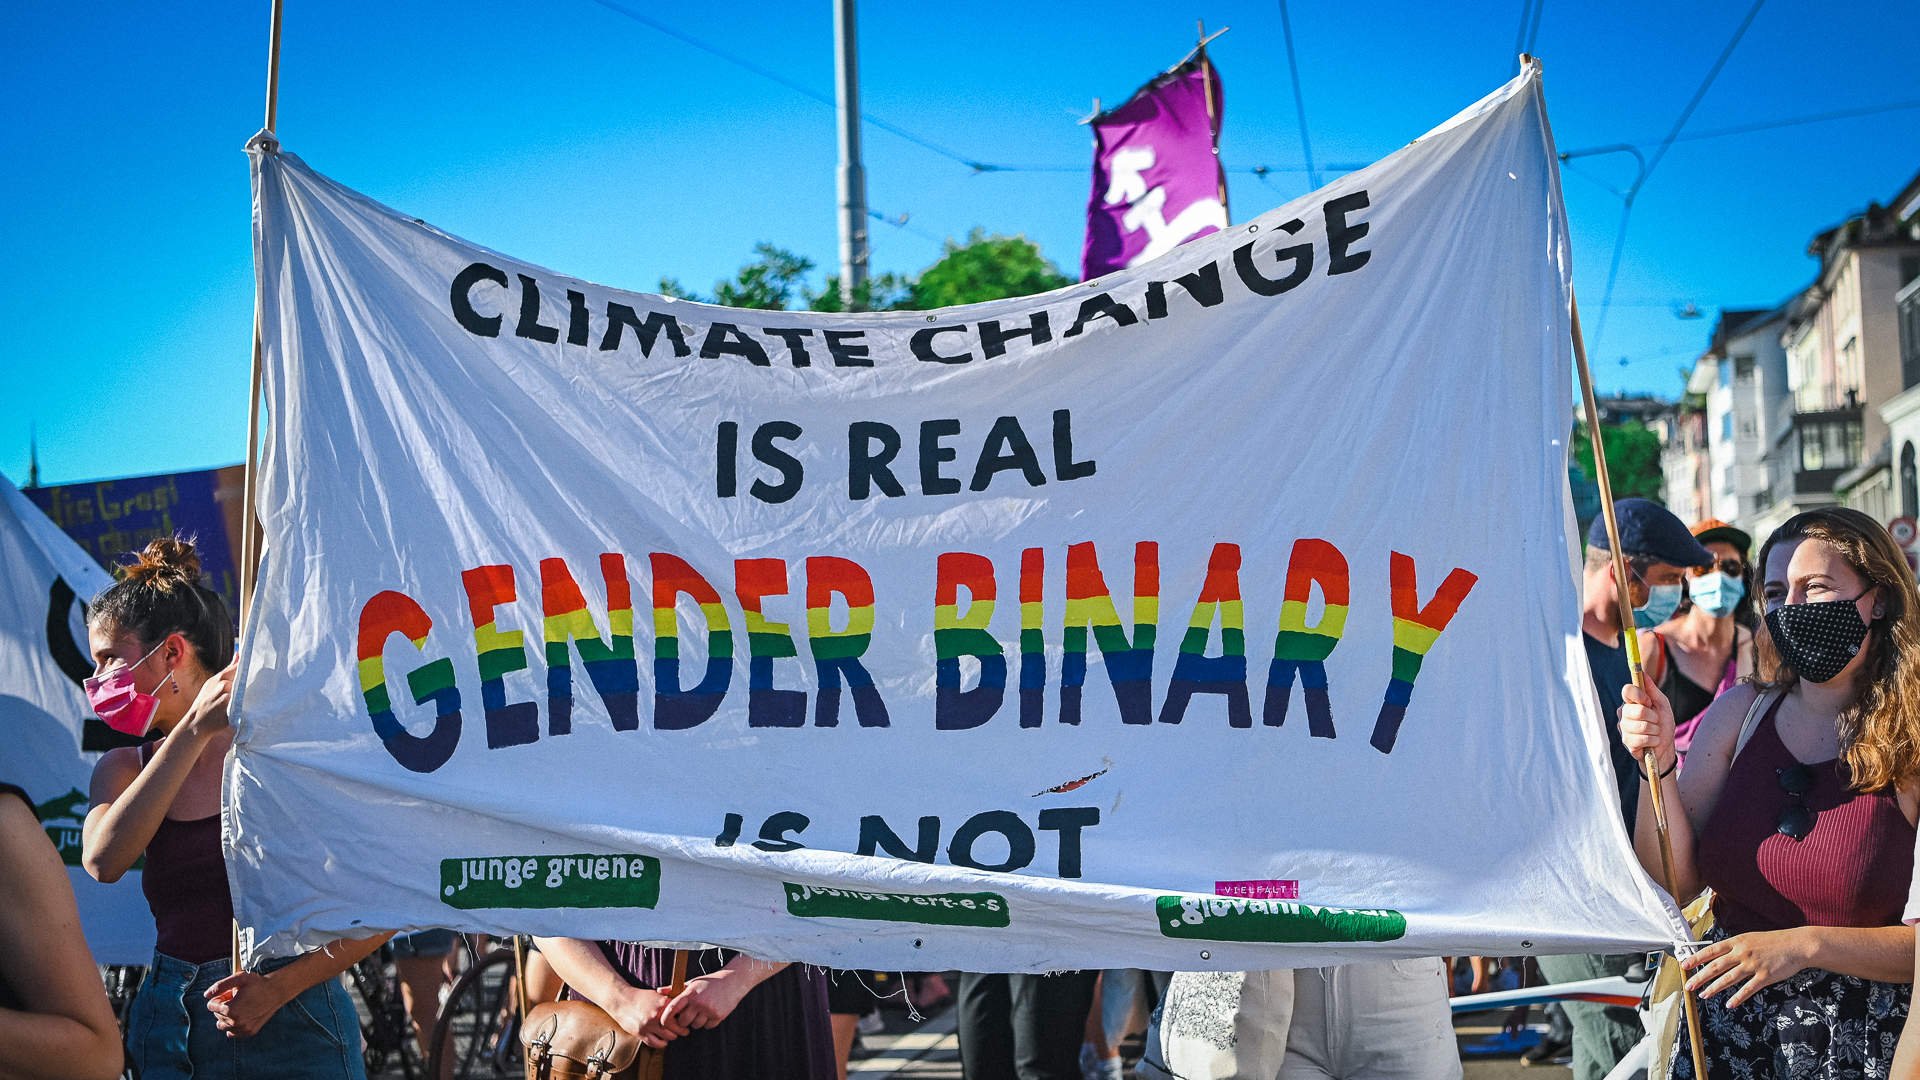 Ein Transparent in der Demo auf dem Limmatquai. Darauf steht: "Climat Change is real Gender Binary is not" und das logo der jungen grünen. "Gender Binary" ist in Regenbogenfarben geschrieben.